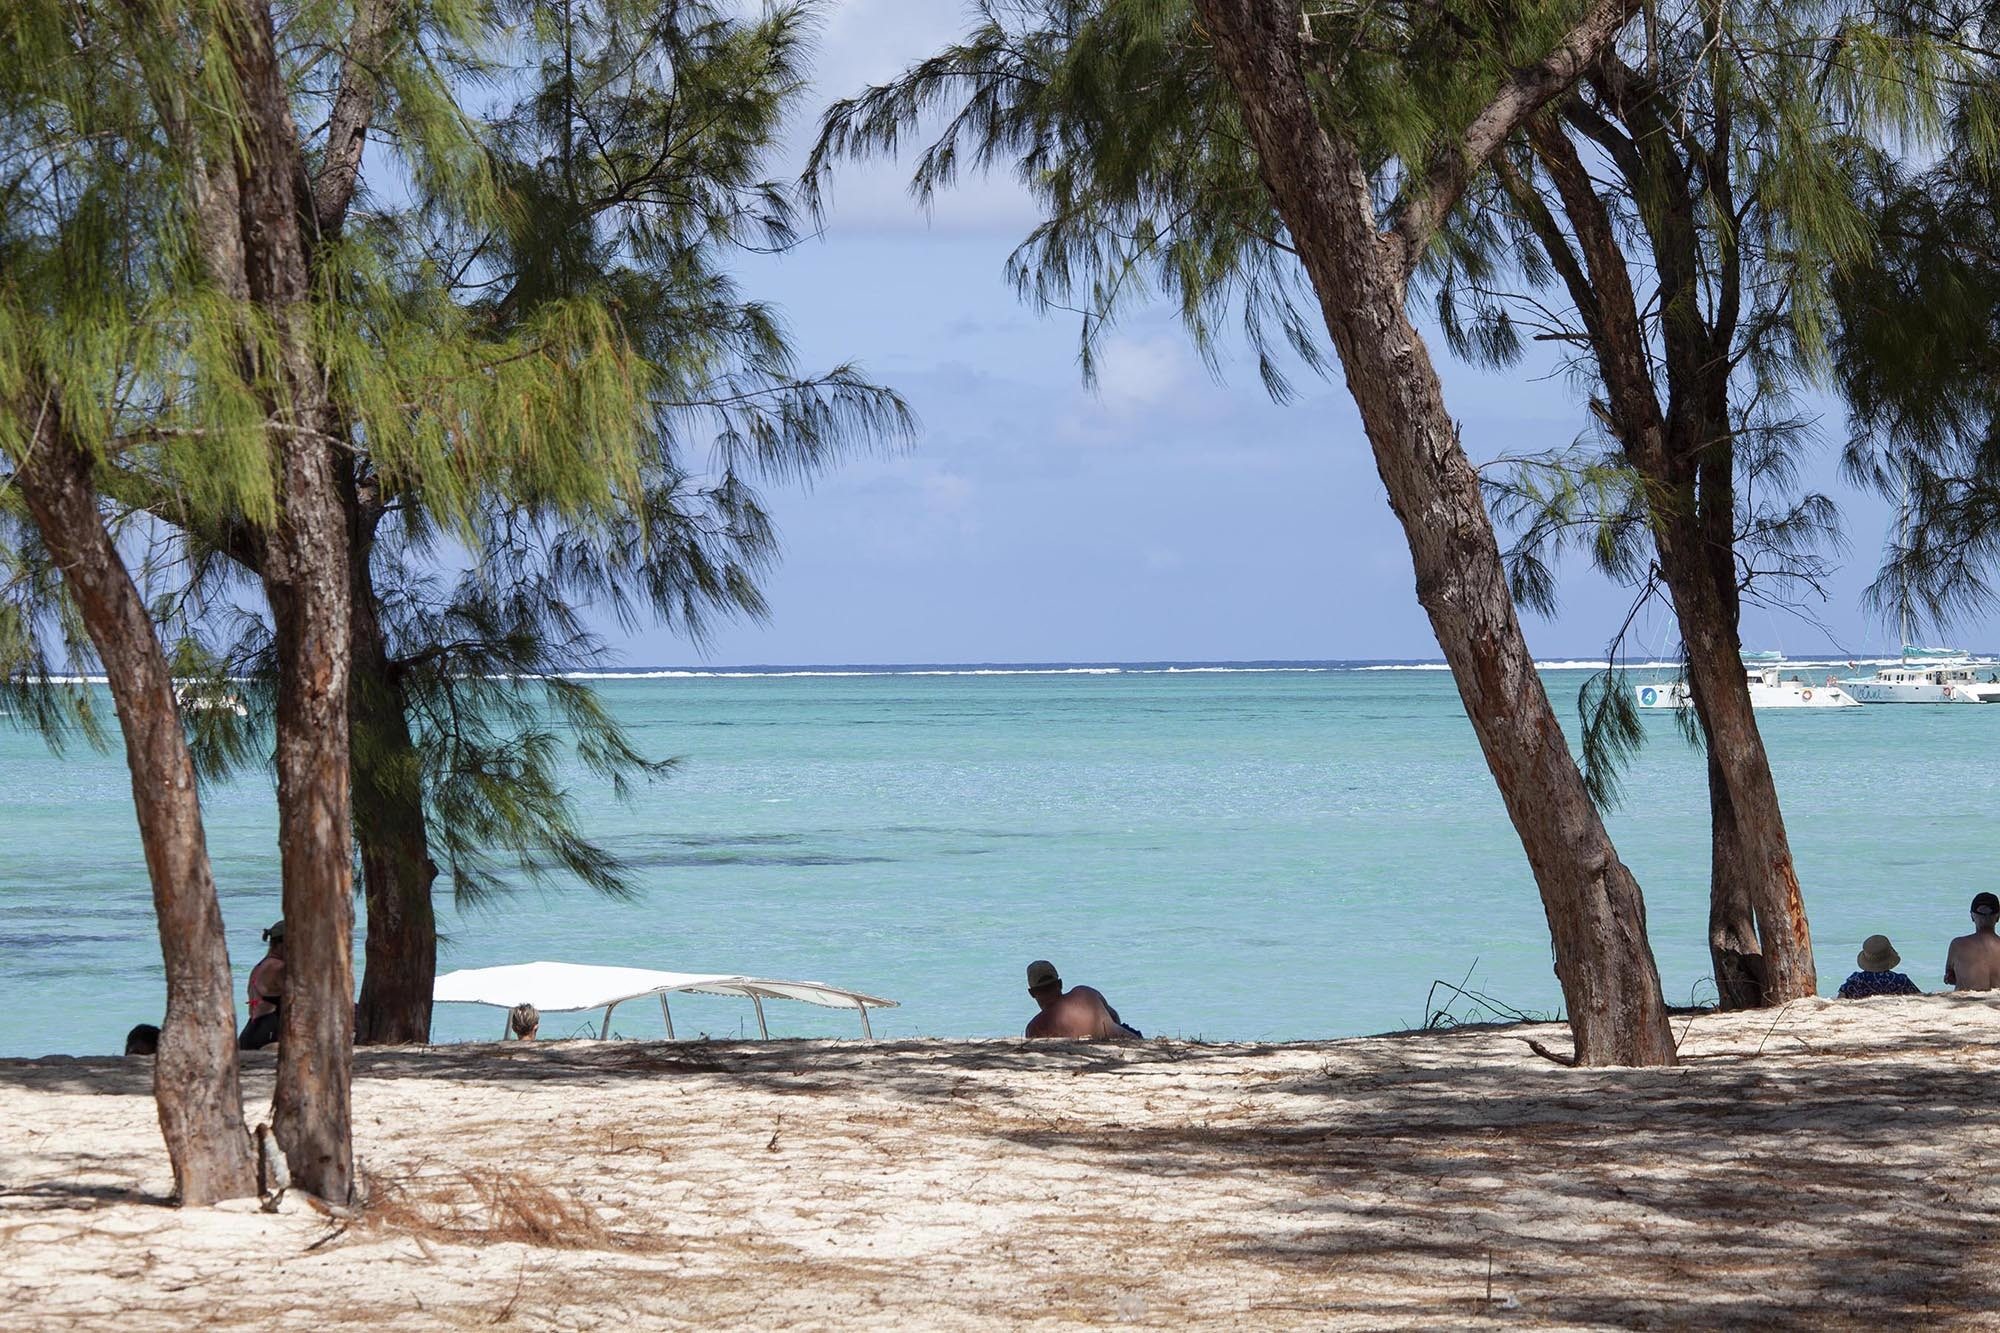 trees lining beach Ile des Cerfs Mauritius